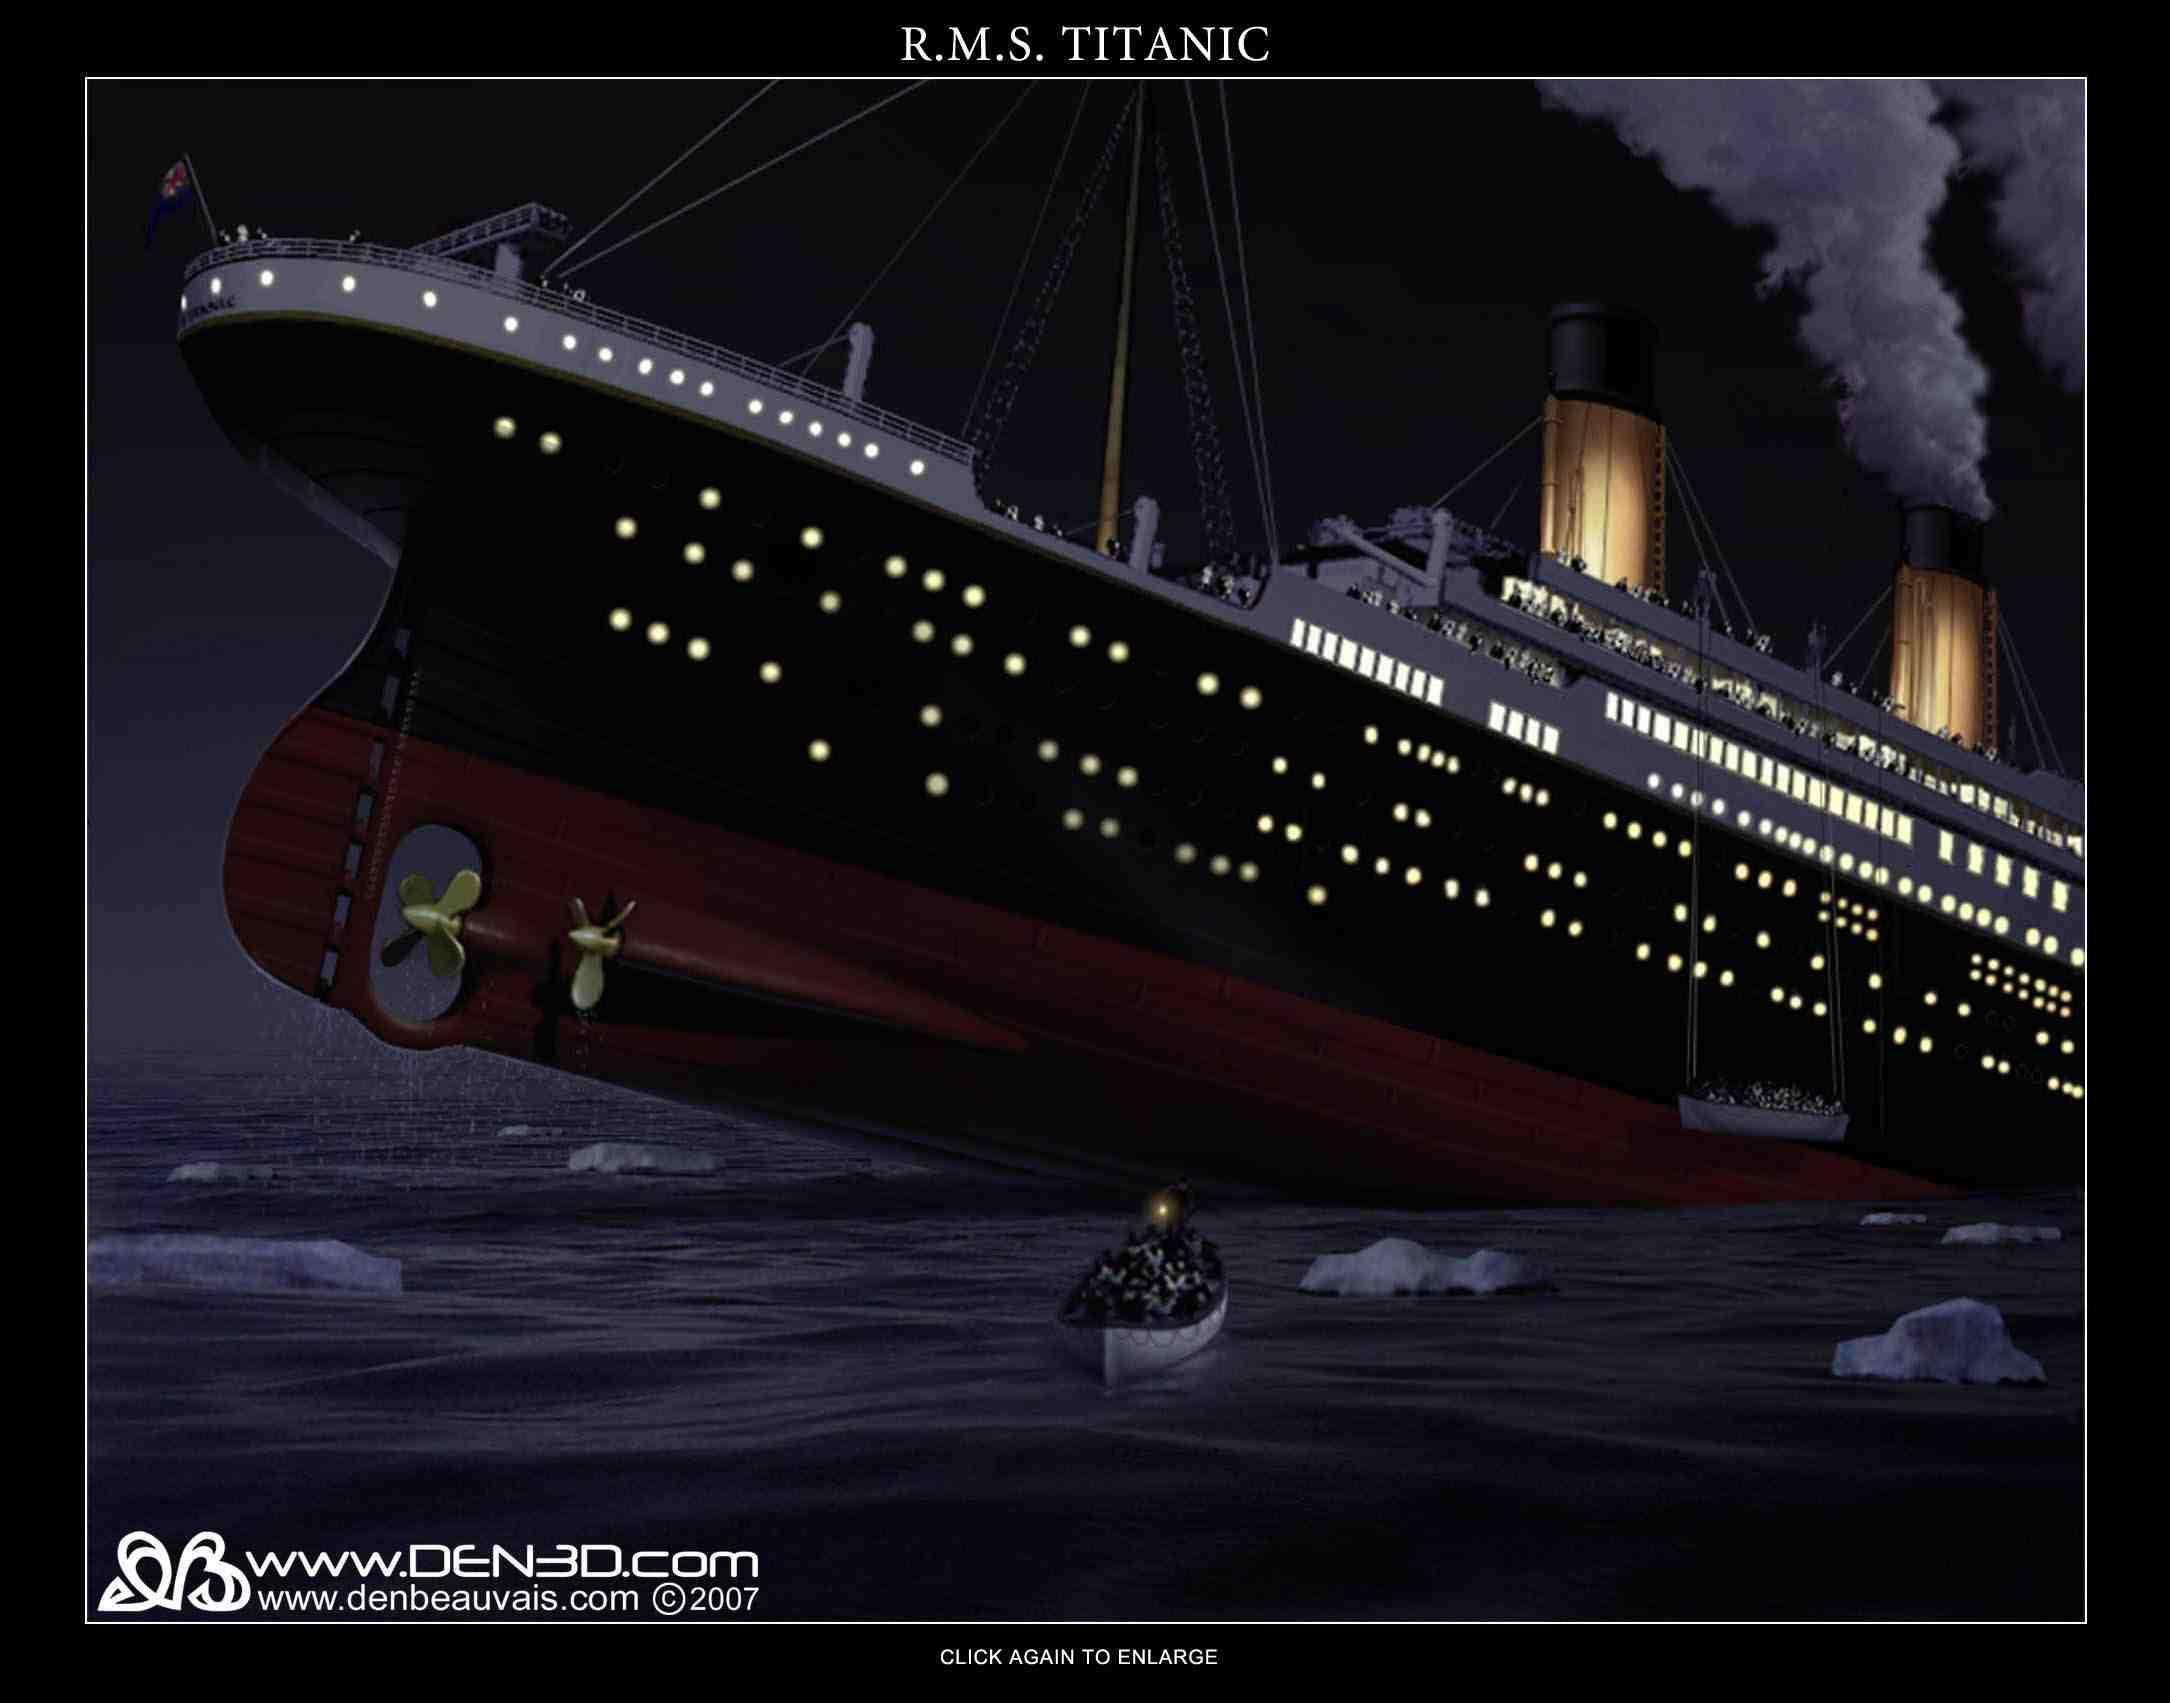 Titanic Sinking HD desktop wallpaper, Widescreen, High Definition